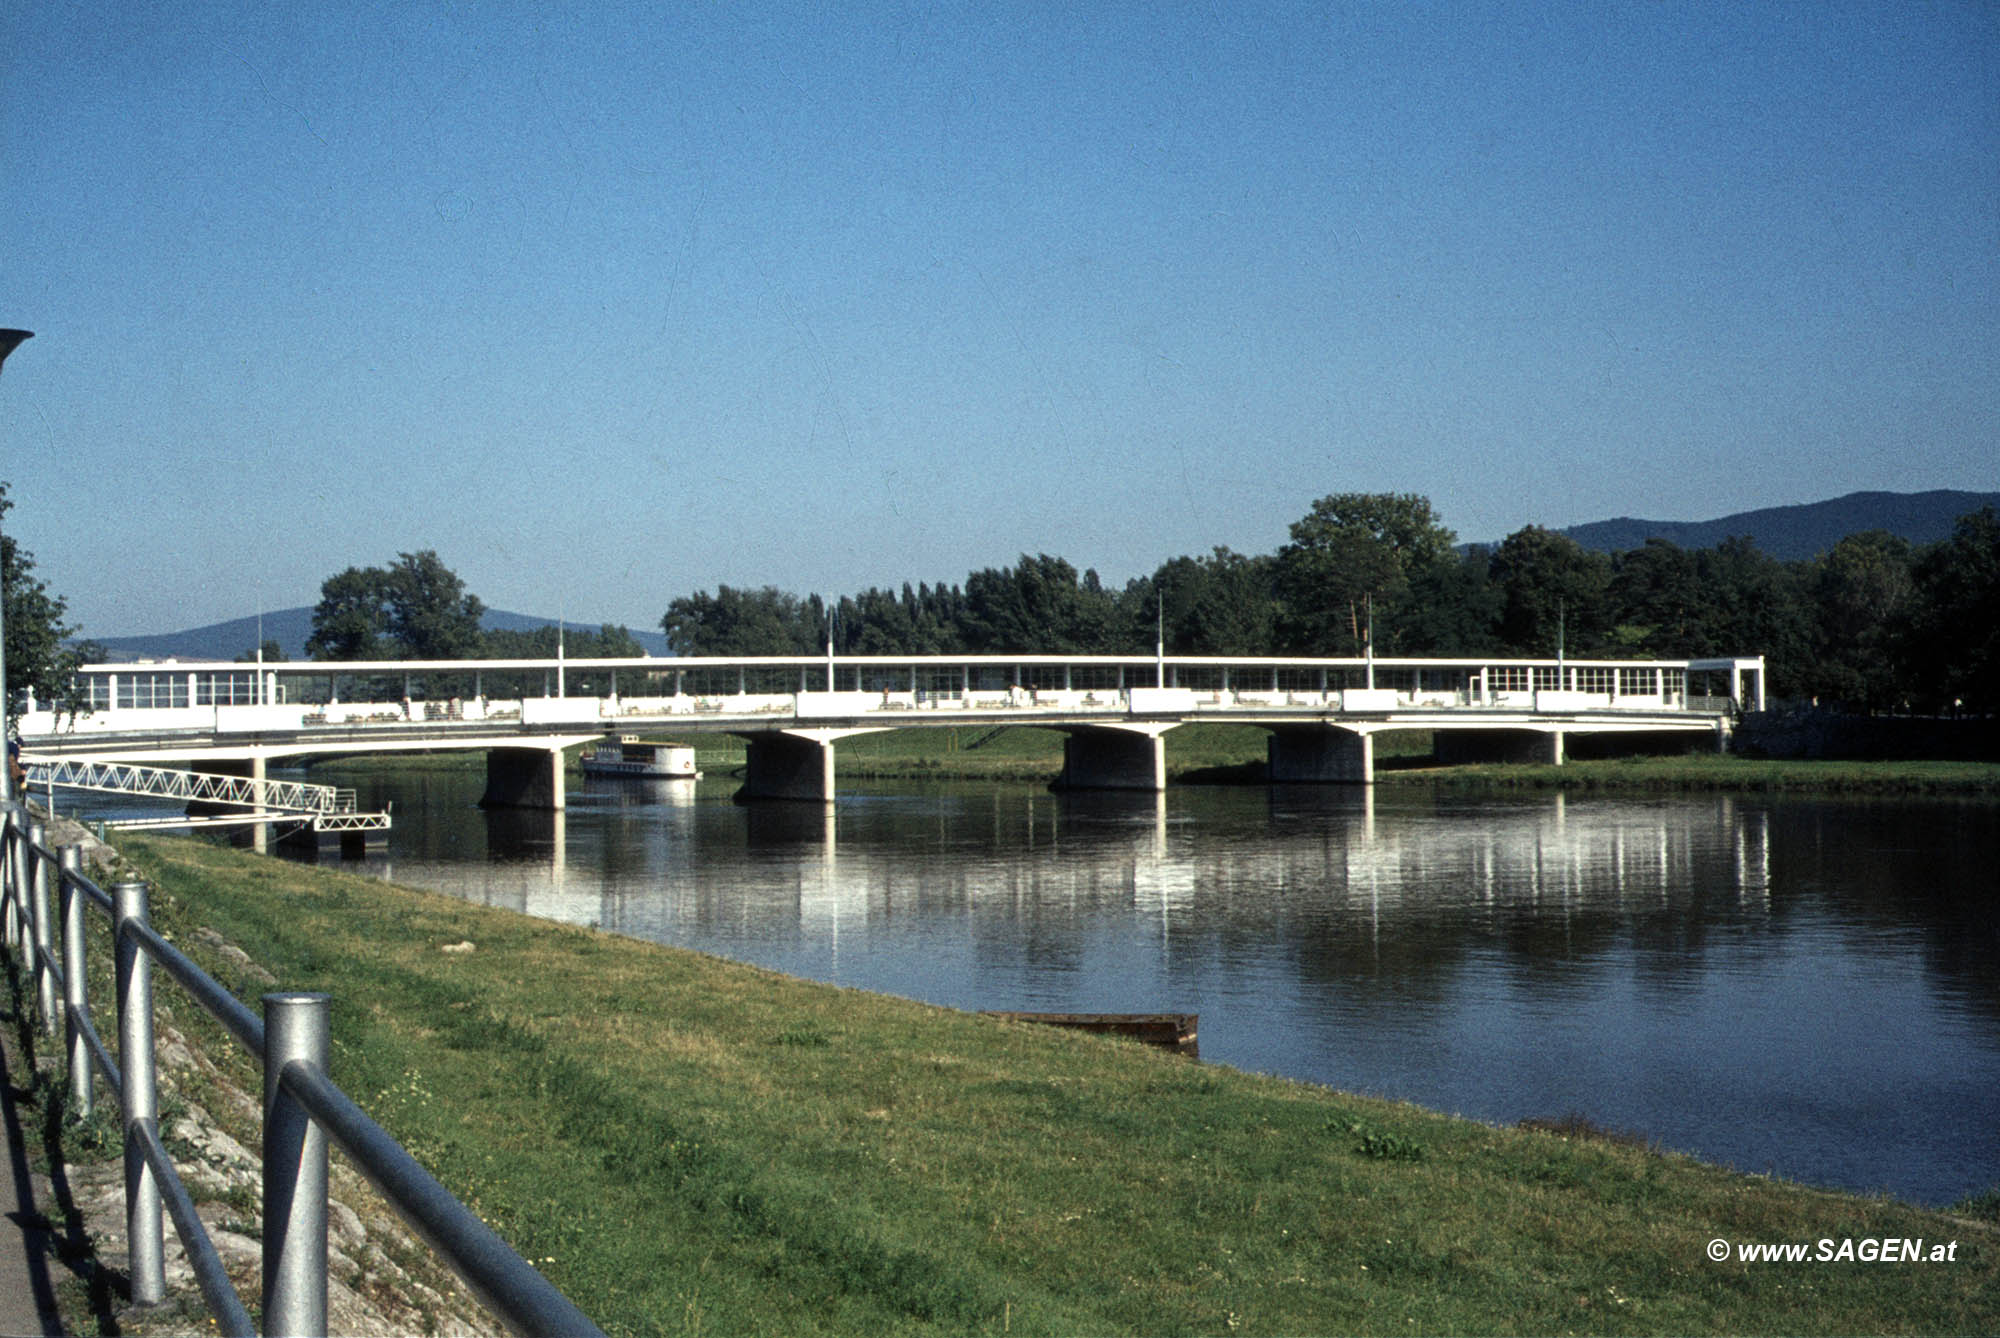 Kolonádový most (Kolonnadenbrücke) Piešťany, Slowakei